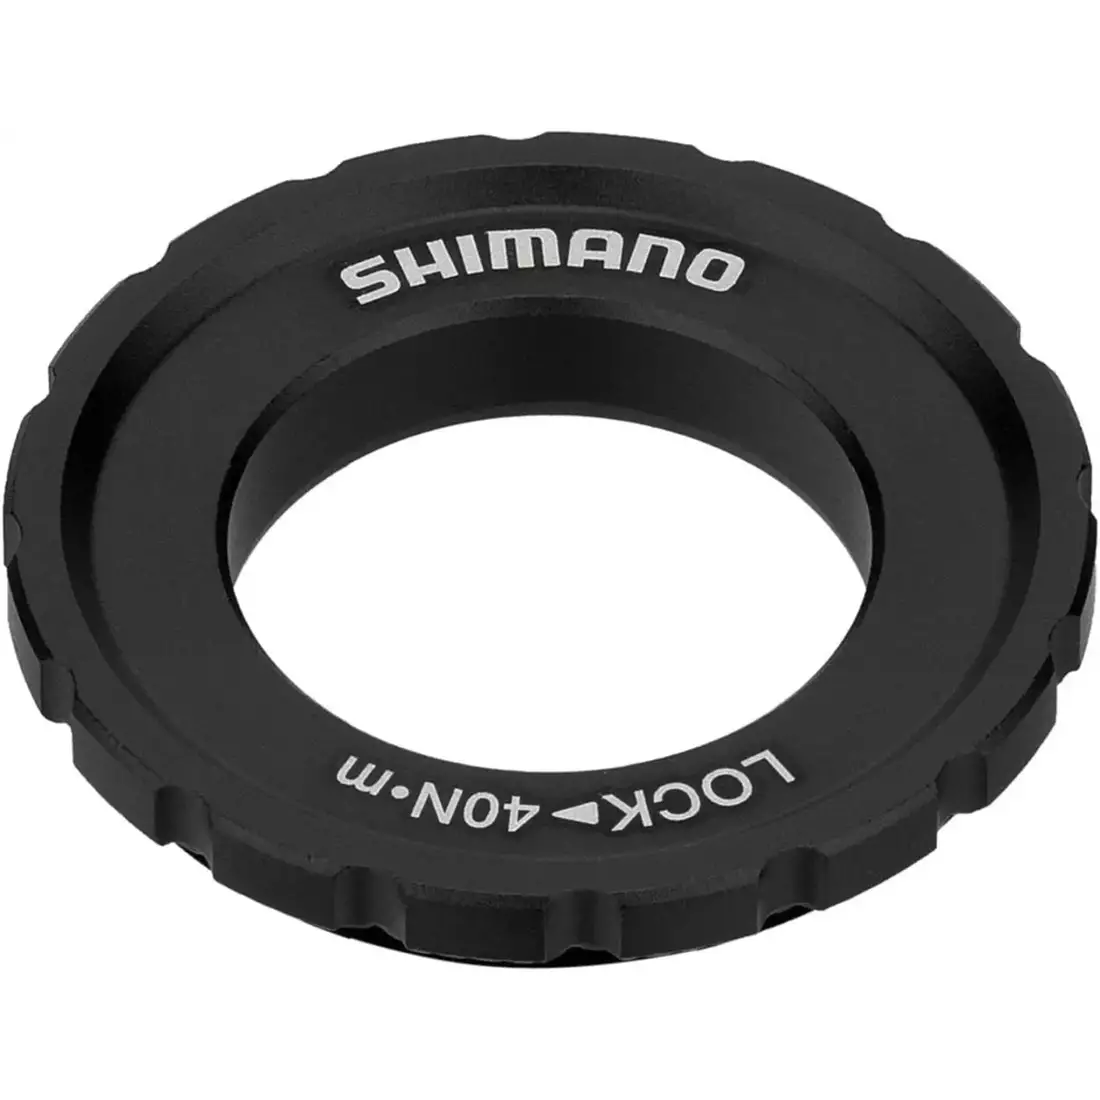 SHIMANO SM-RT64 kerékpár féktárcsa, 203mm